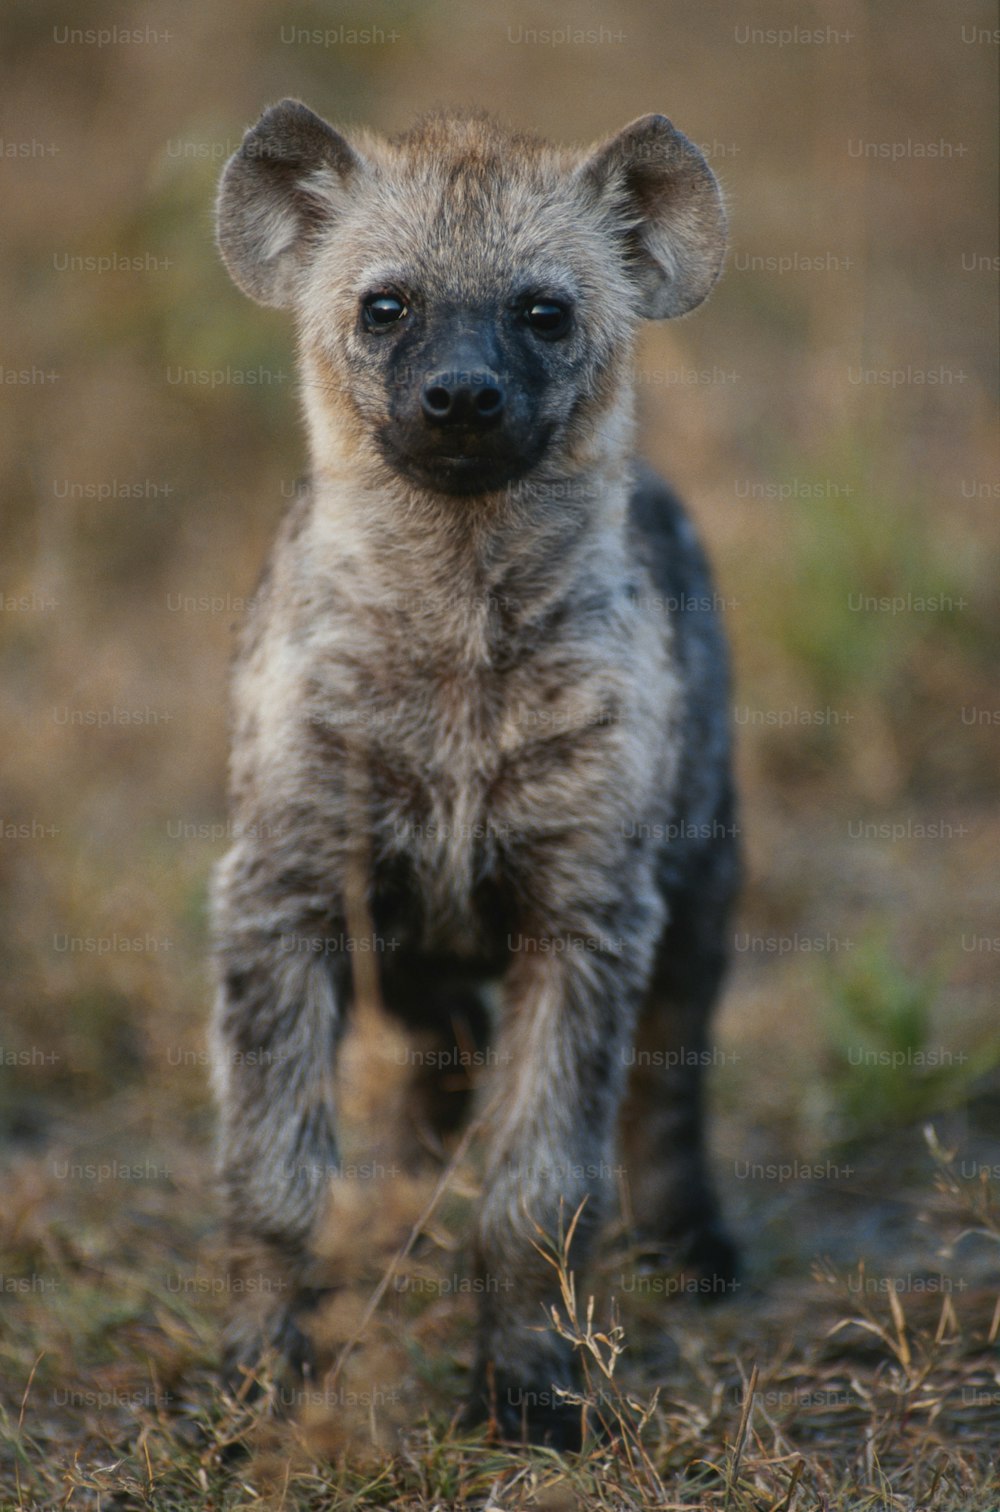 Una hiena bebé está parada en la hierba